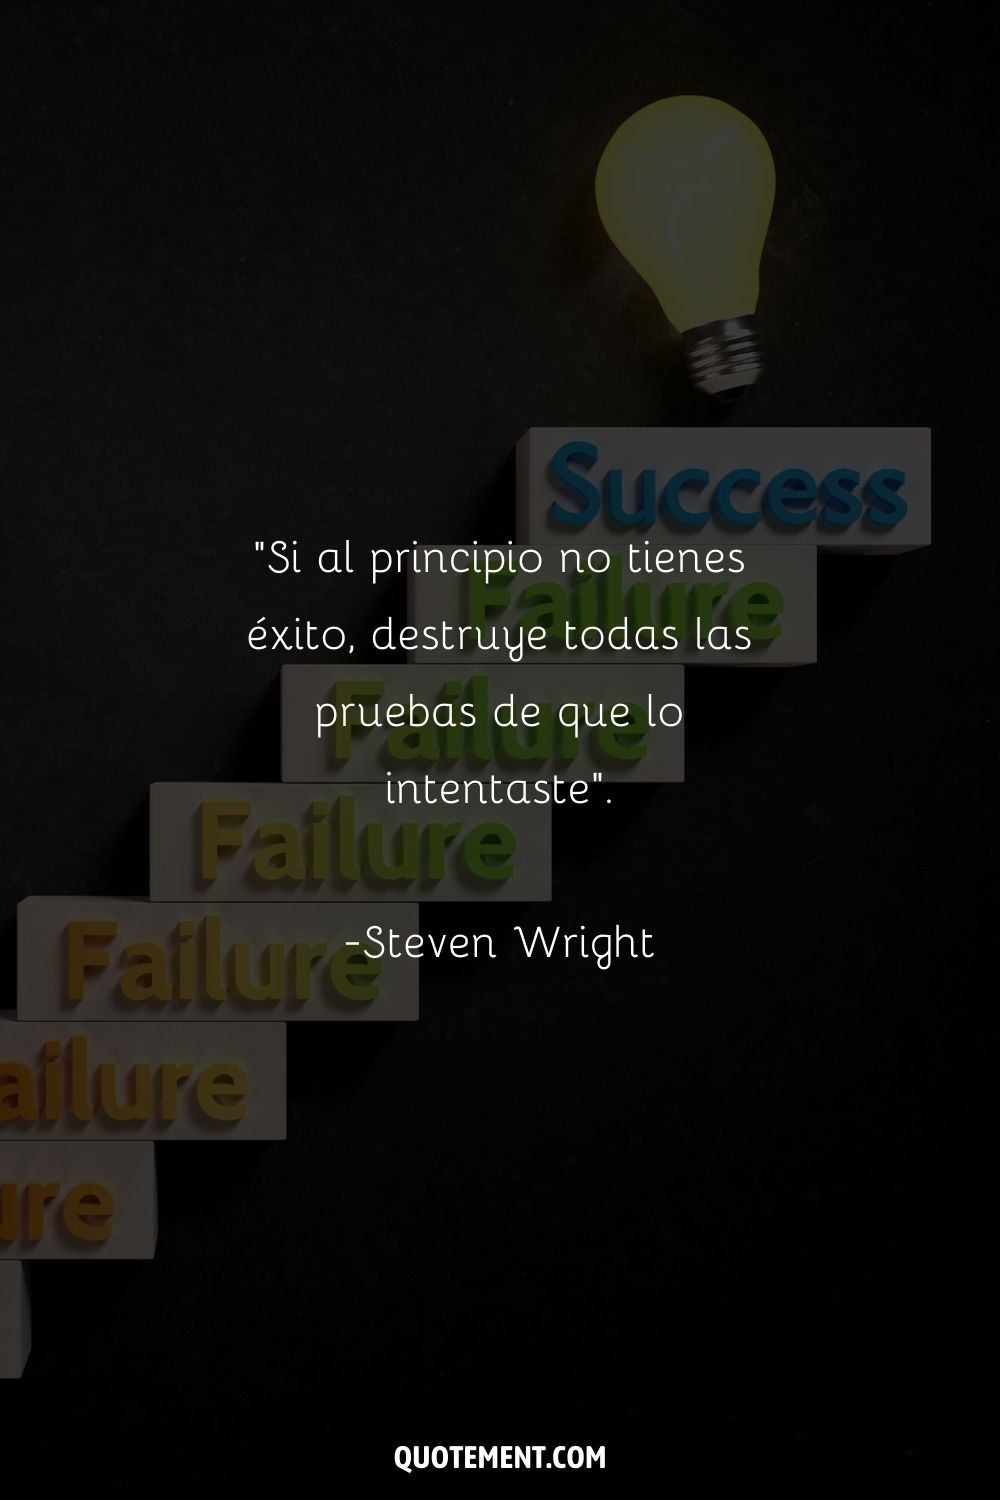 "Si al principio no tienes éxito, destruye todas las pruebas de que lo intentaste". - Steven Wright